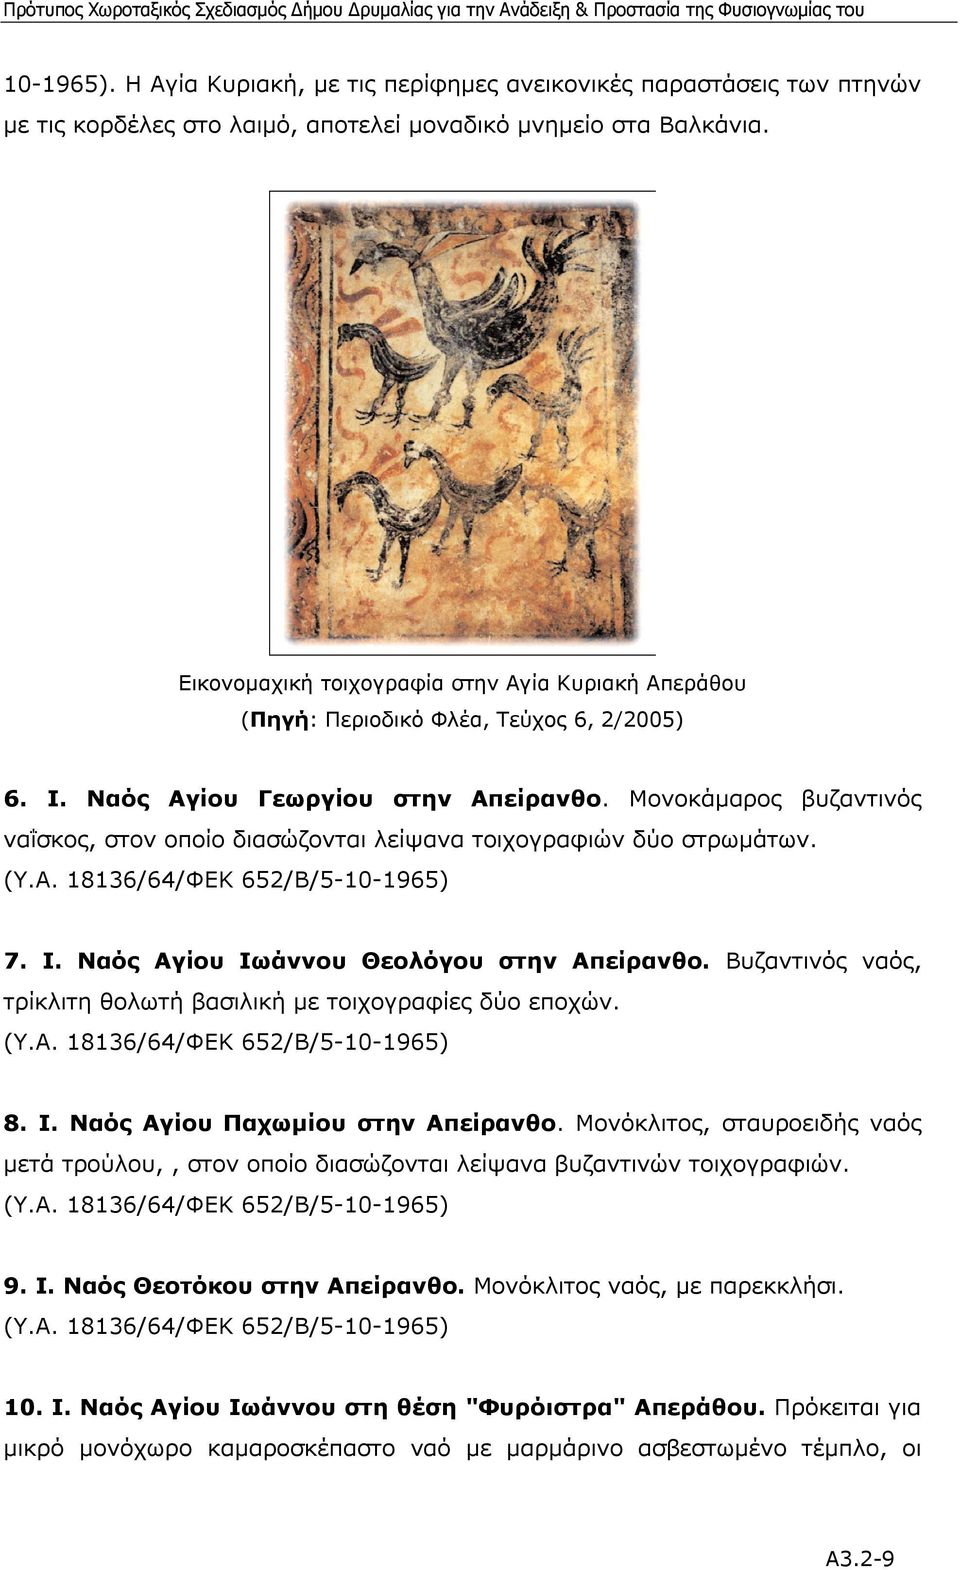 Μονοκάµαρος βυζαντινός ναΐσκος, στον οποίο διασώζονται λείψανα τοιχογραφιών δύο στρωµάτων. (Υ.Α. 18136/64/ΦΕΚ 652/Β/5-10-1965) 7. Ι. Ναός Αγίου Ιωάννου Θεολόγου στην Απείρανθο.